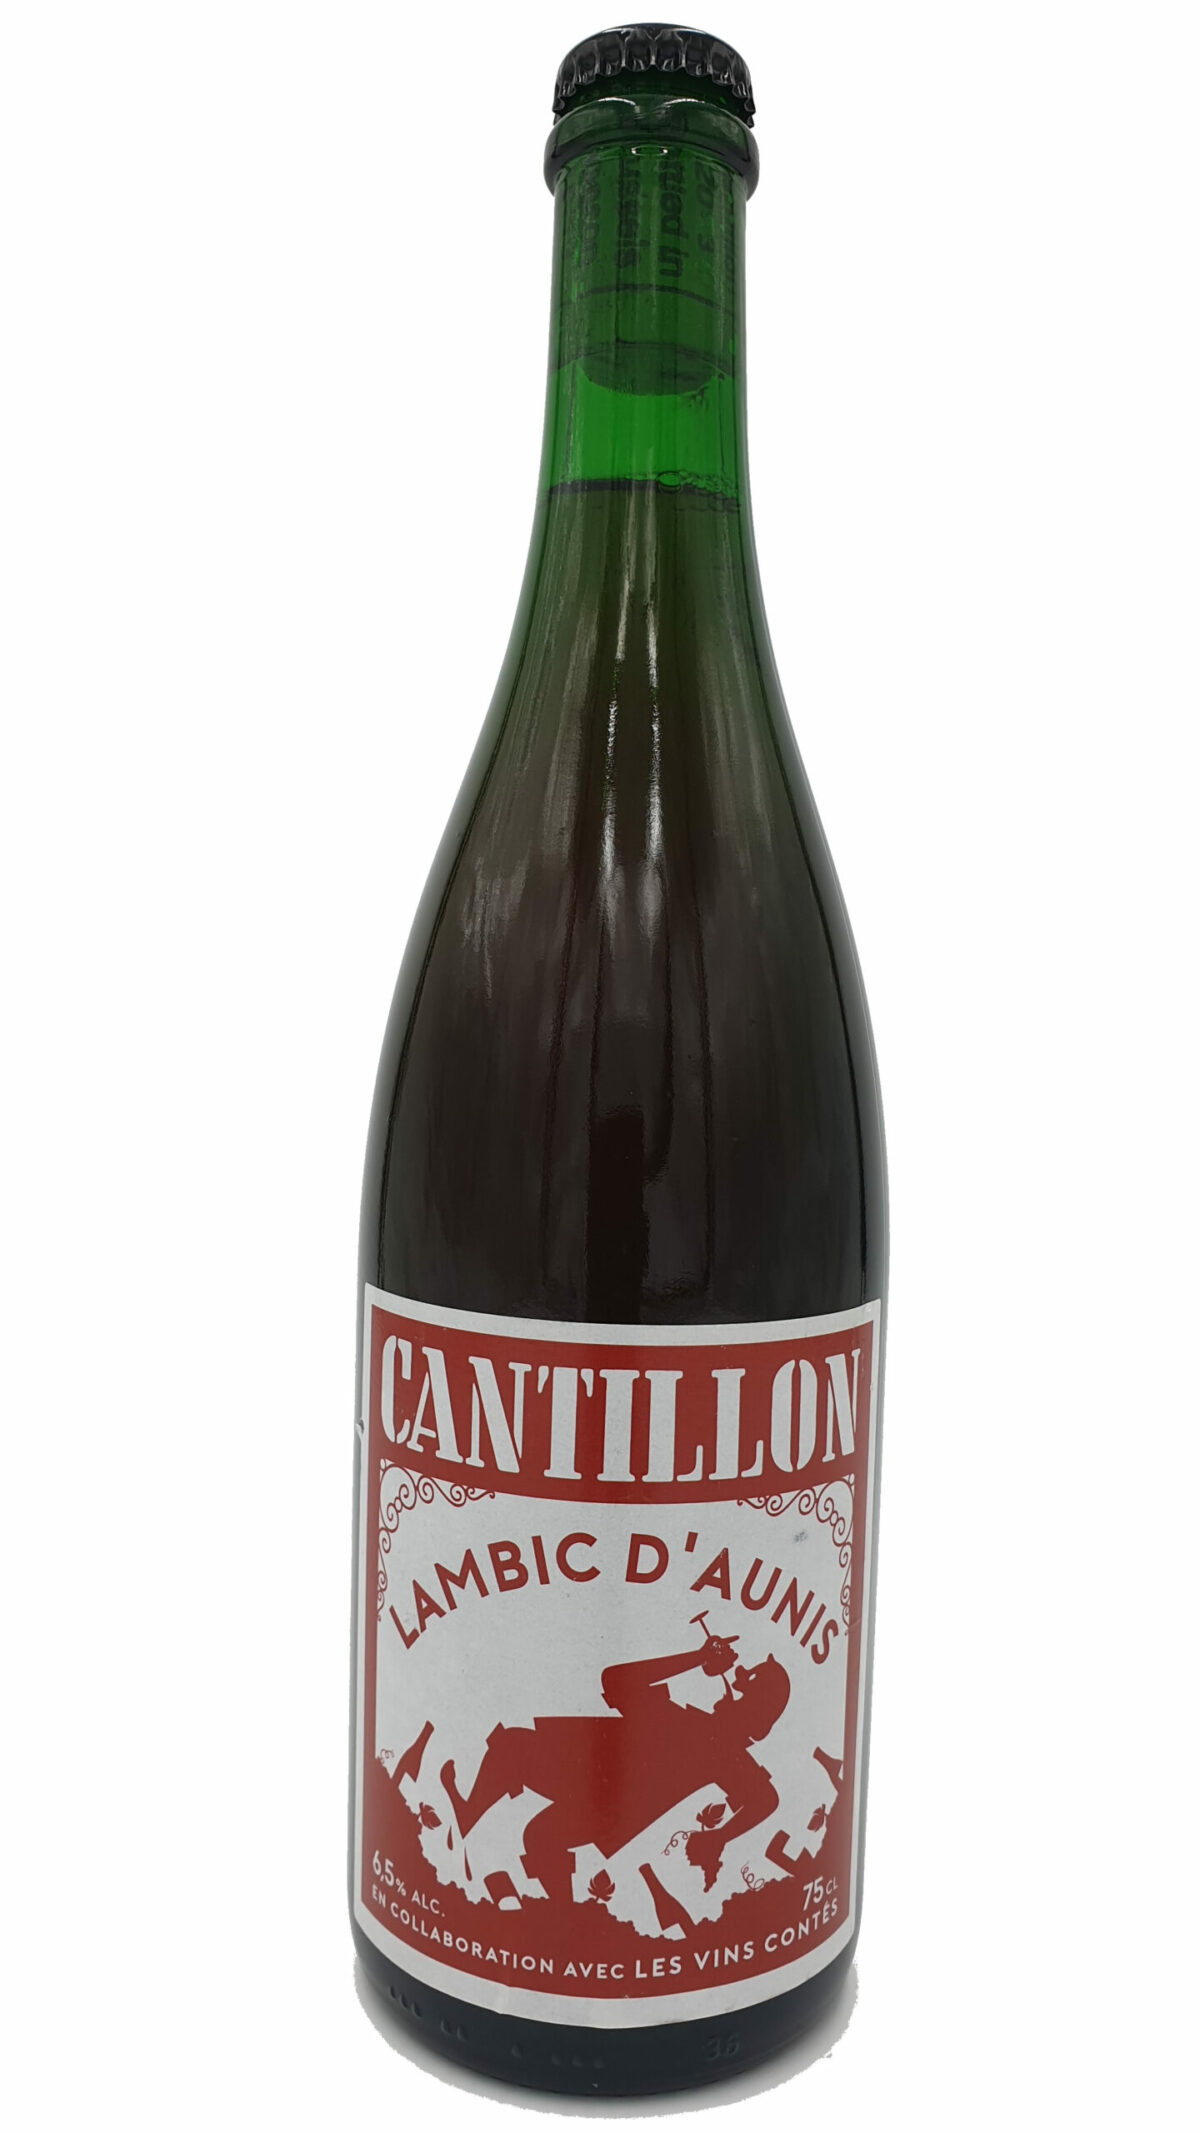 cantillon lambic d'aunis